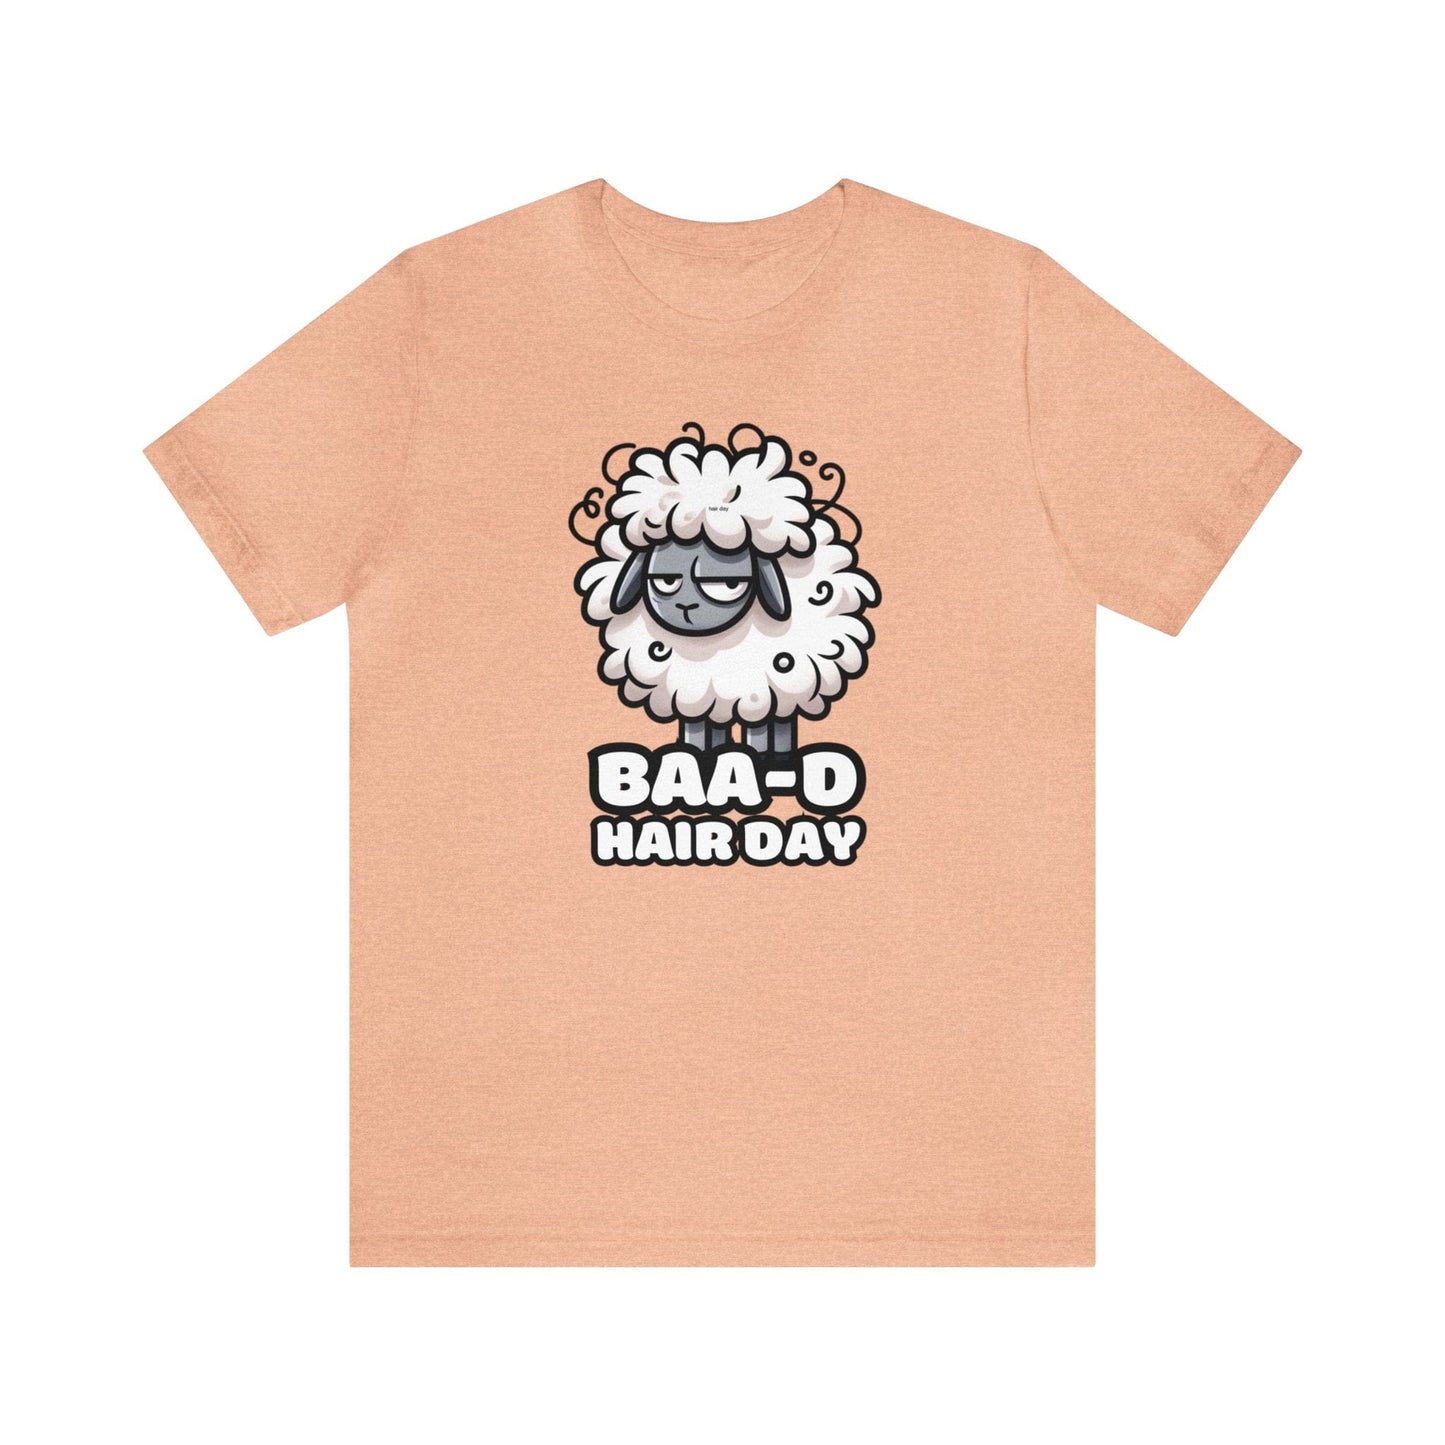 Baa-d Hair - Sheep T-shirt Heather Peach / S